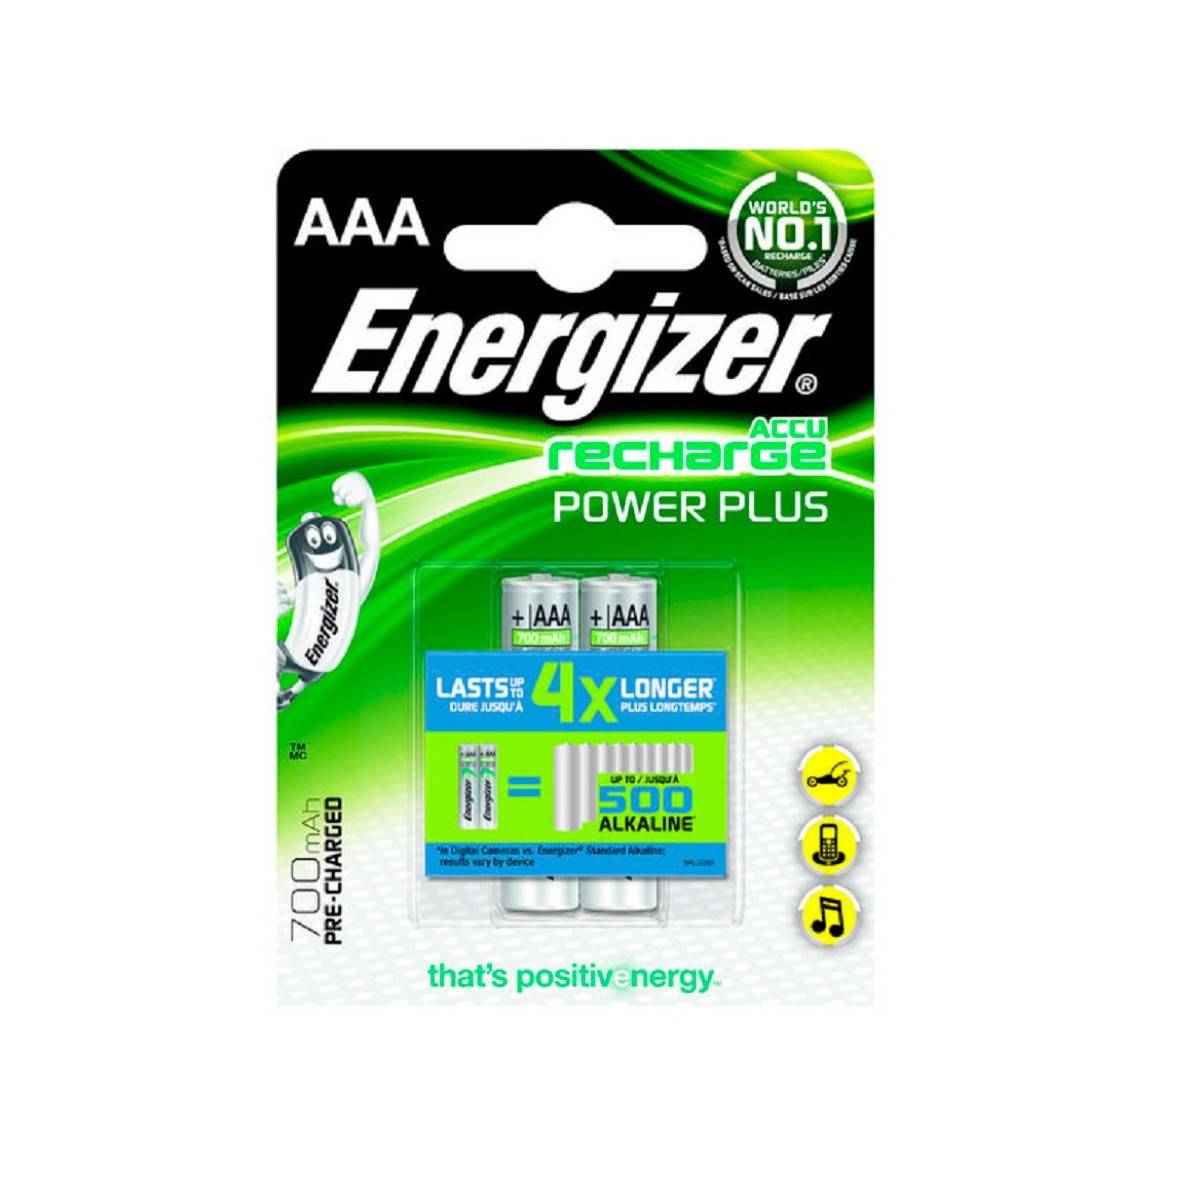 Energizer Power Plus Wiederaufladbare Batterie 700mAh HR03 (AAA) Blister mit 2 Stk.